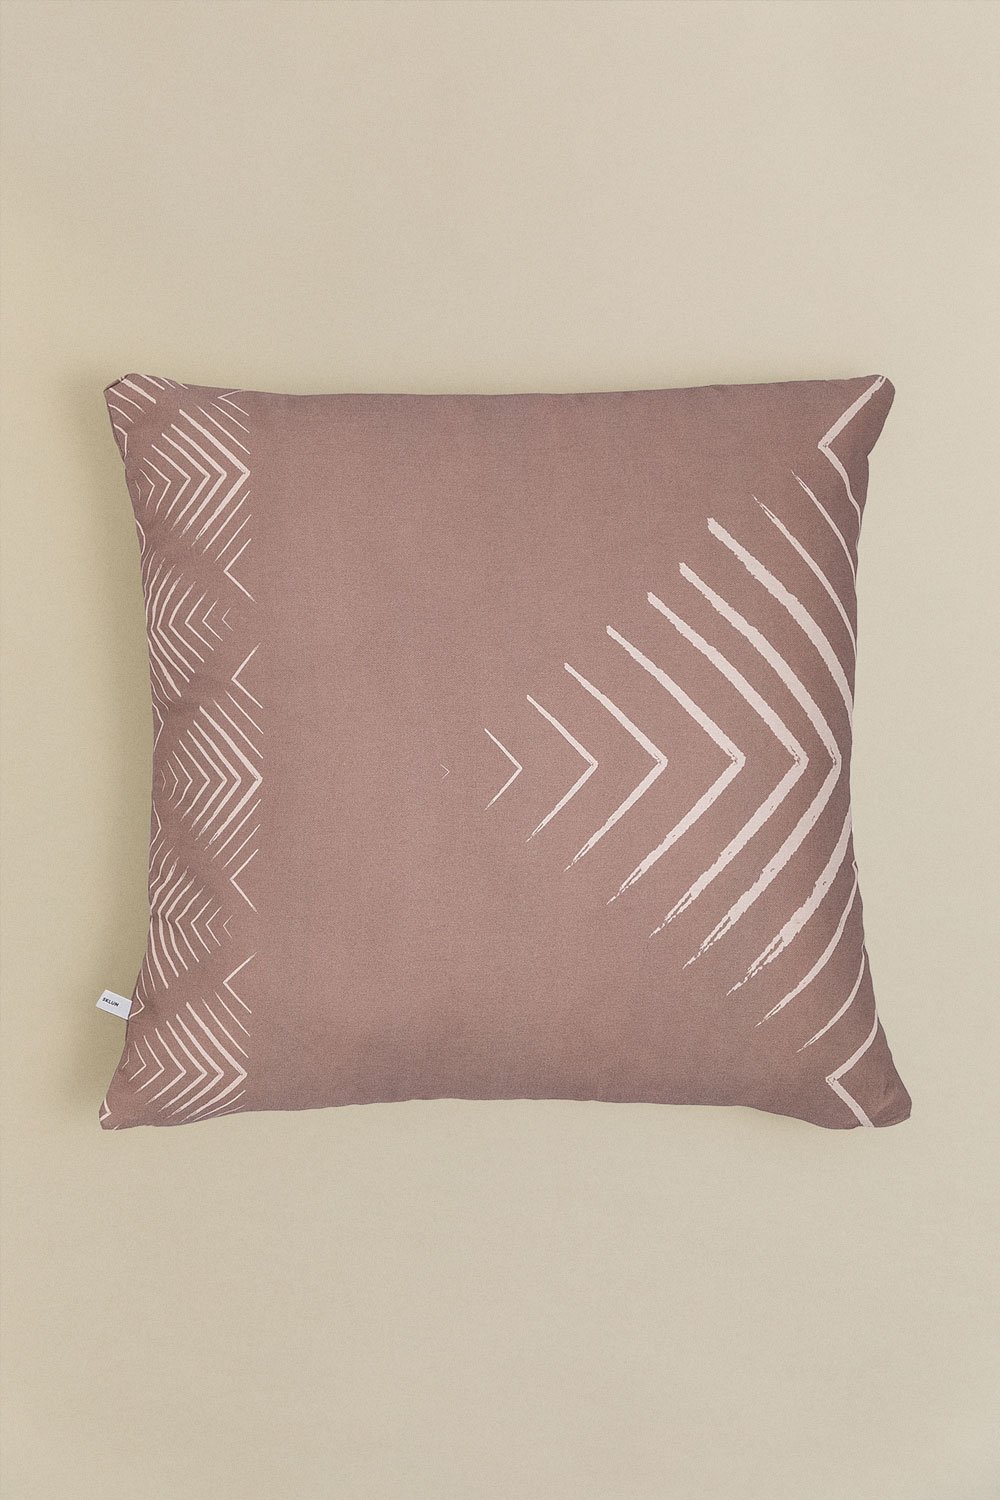 Federa per cuscino quadrata in cotone (60x60 cm) Alikas Style, immagine della galleria 1